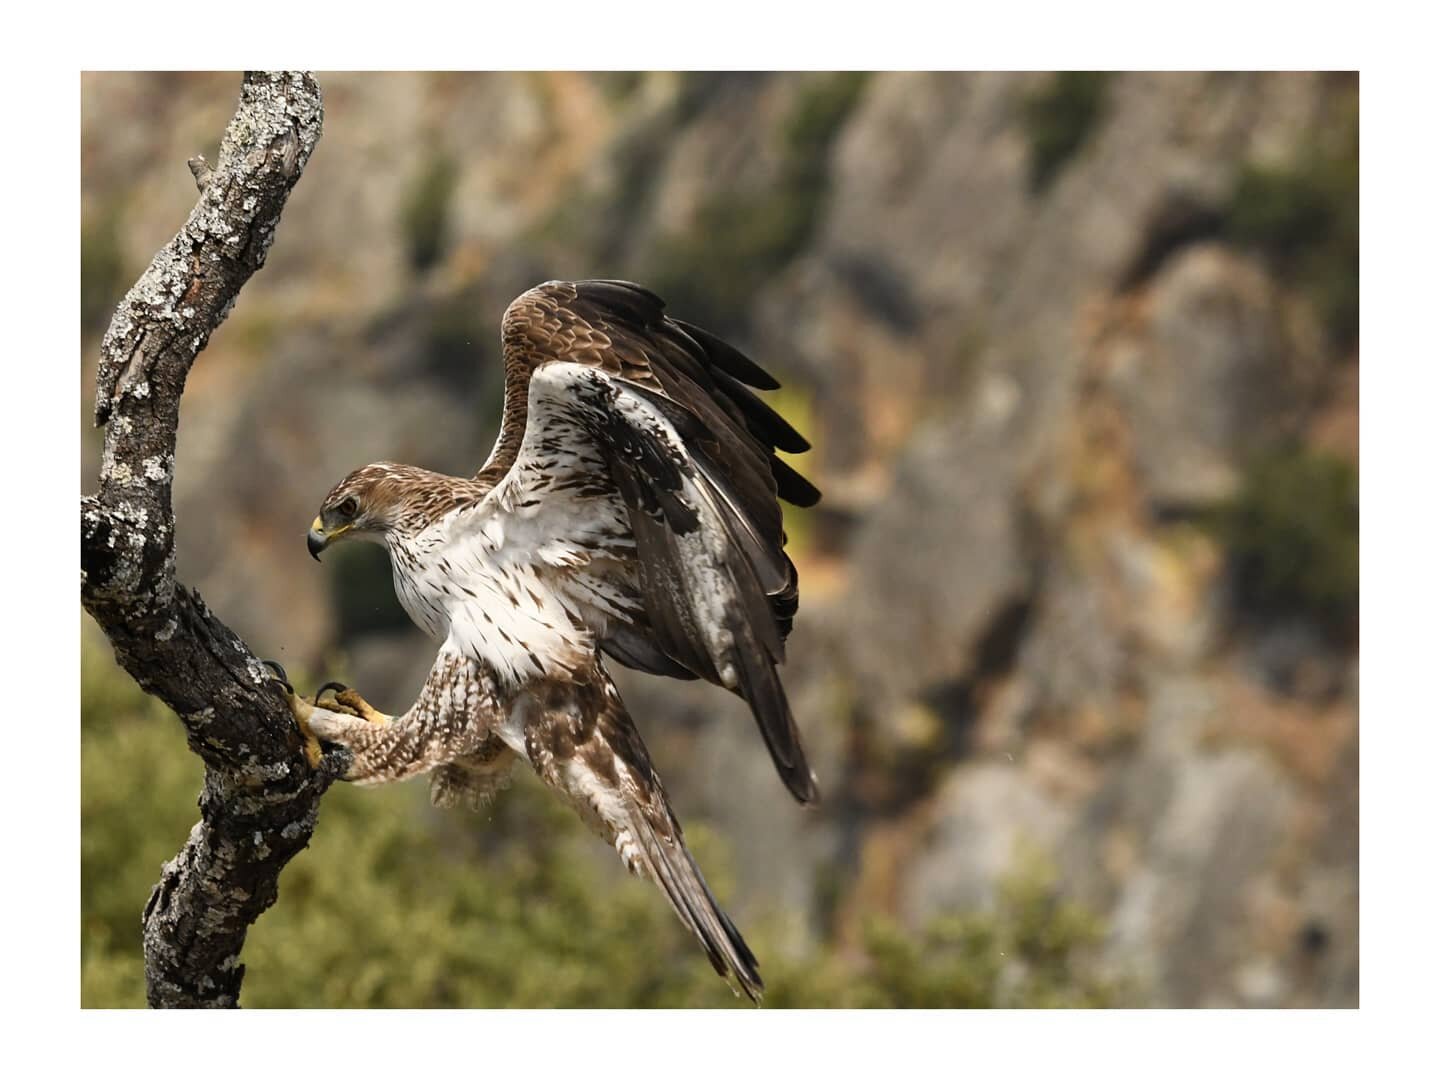 &Aacute;guila perdicera 

Este fin de semana estuve en Arribes del Duero filmando &aacute;guila perdicera para el documental en el que estoy trabajando.

#fujifilm  #fujifilmxt4  #fujinon100400  #nature  #wildlifephotography  #wild #eagle